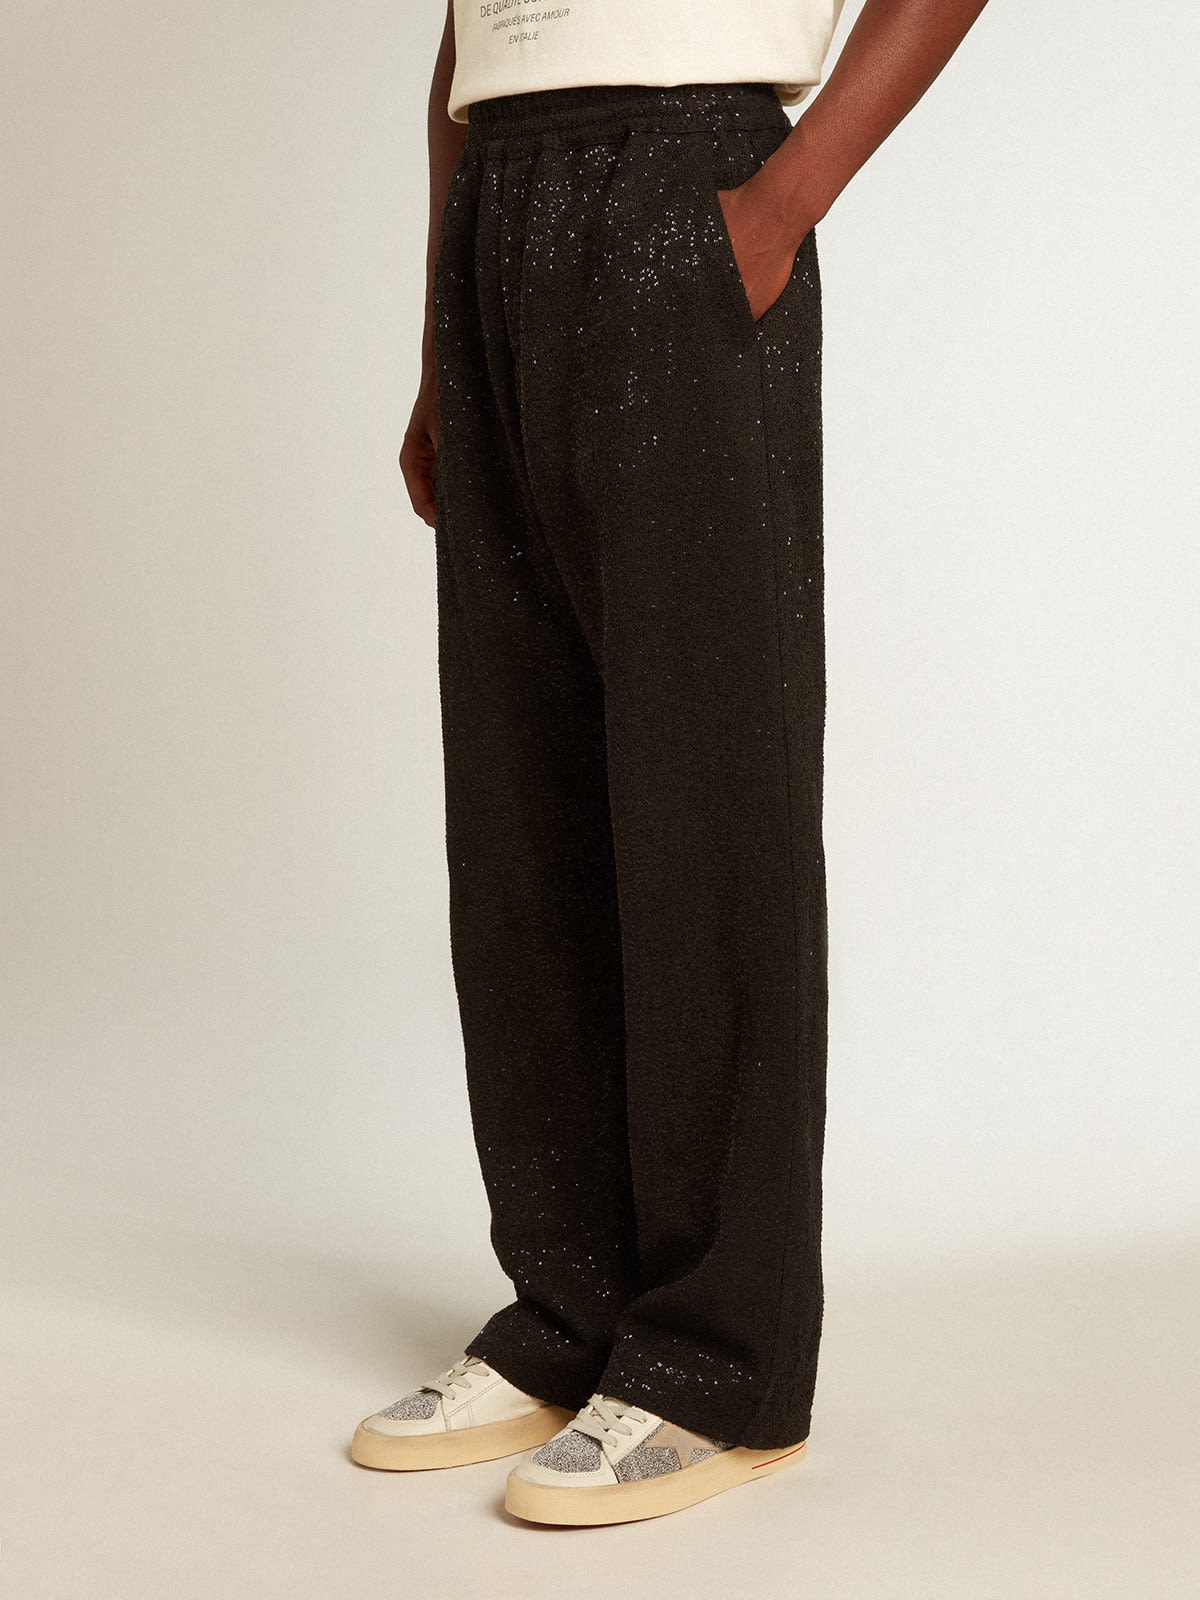 Golden Goose - Pantalón jogger de hombre en mezcla de lino color negro con lentejuelas in 